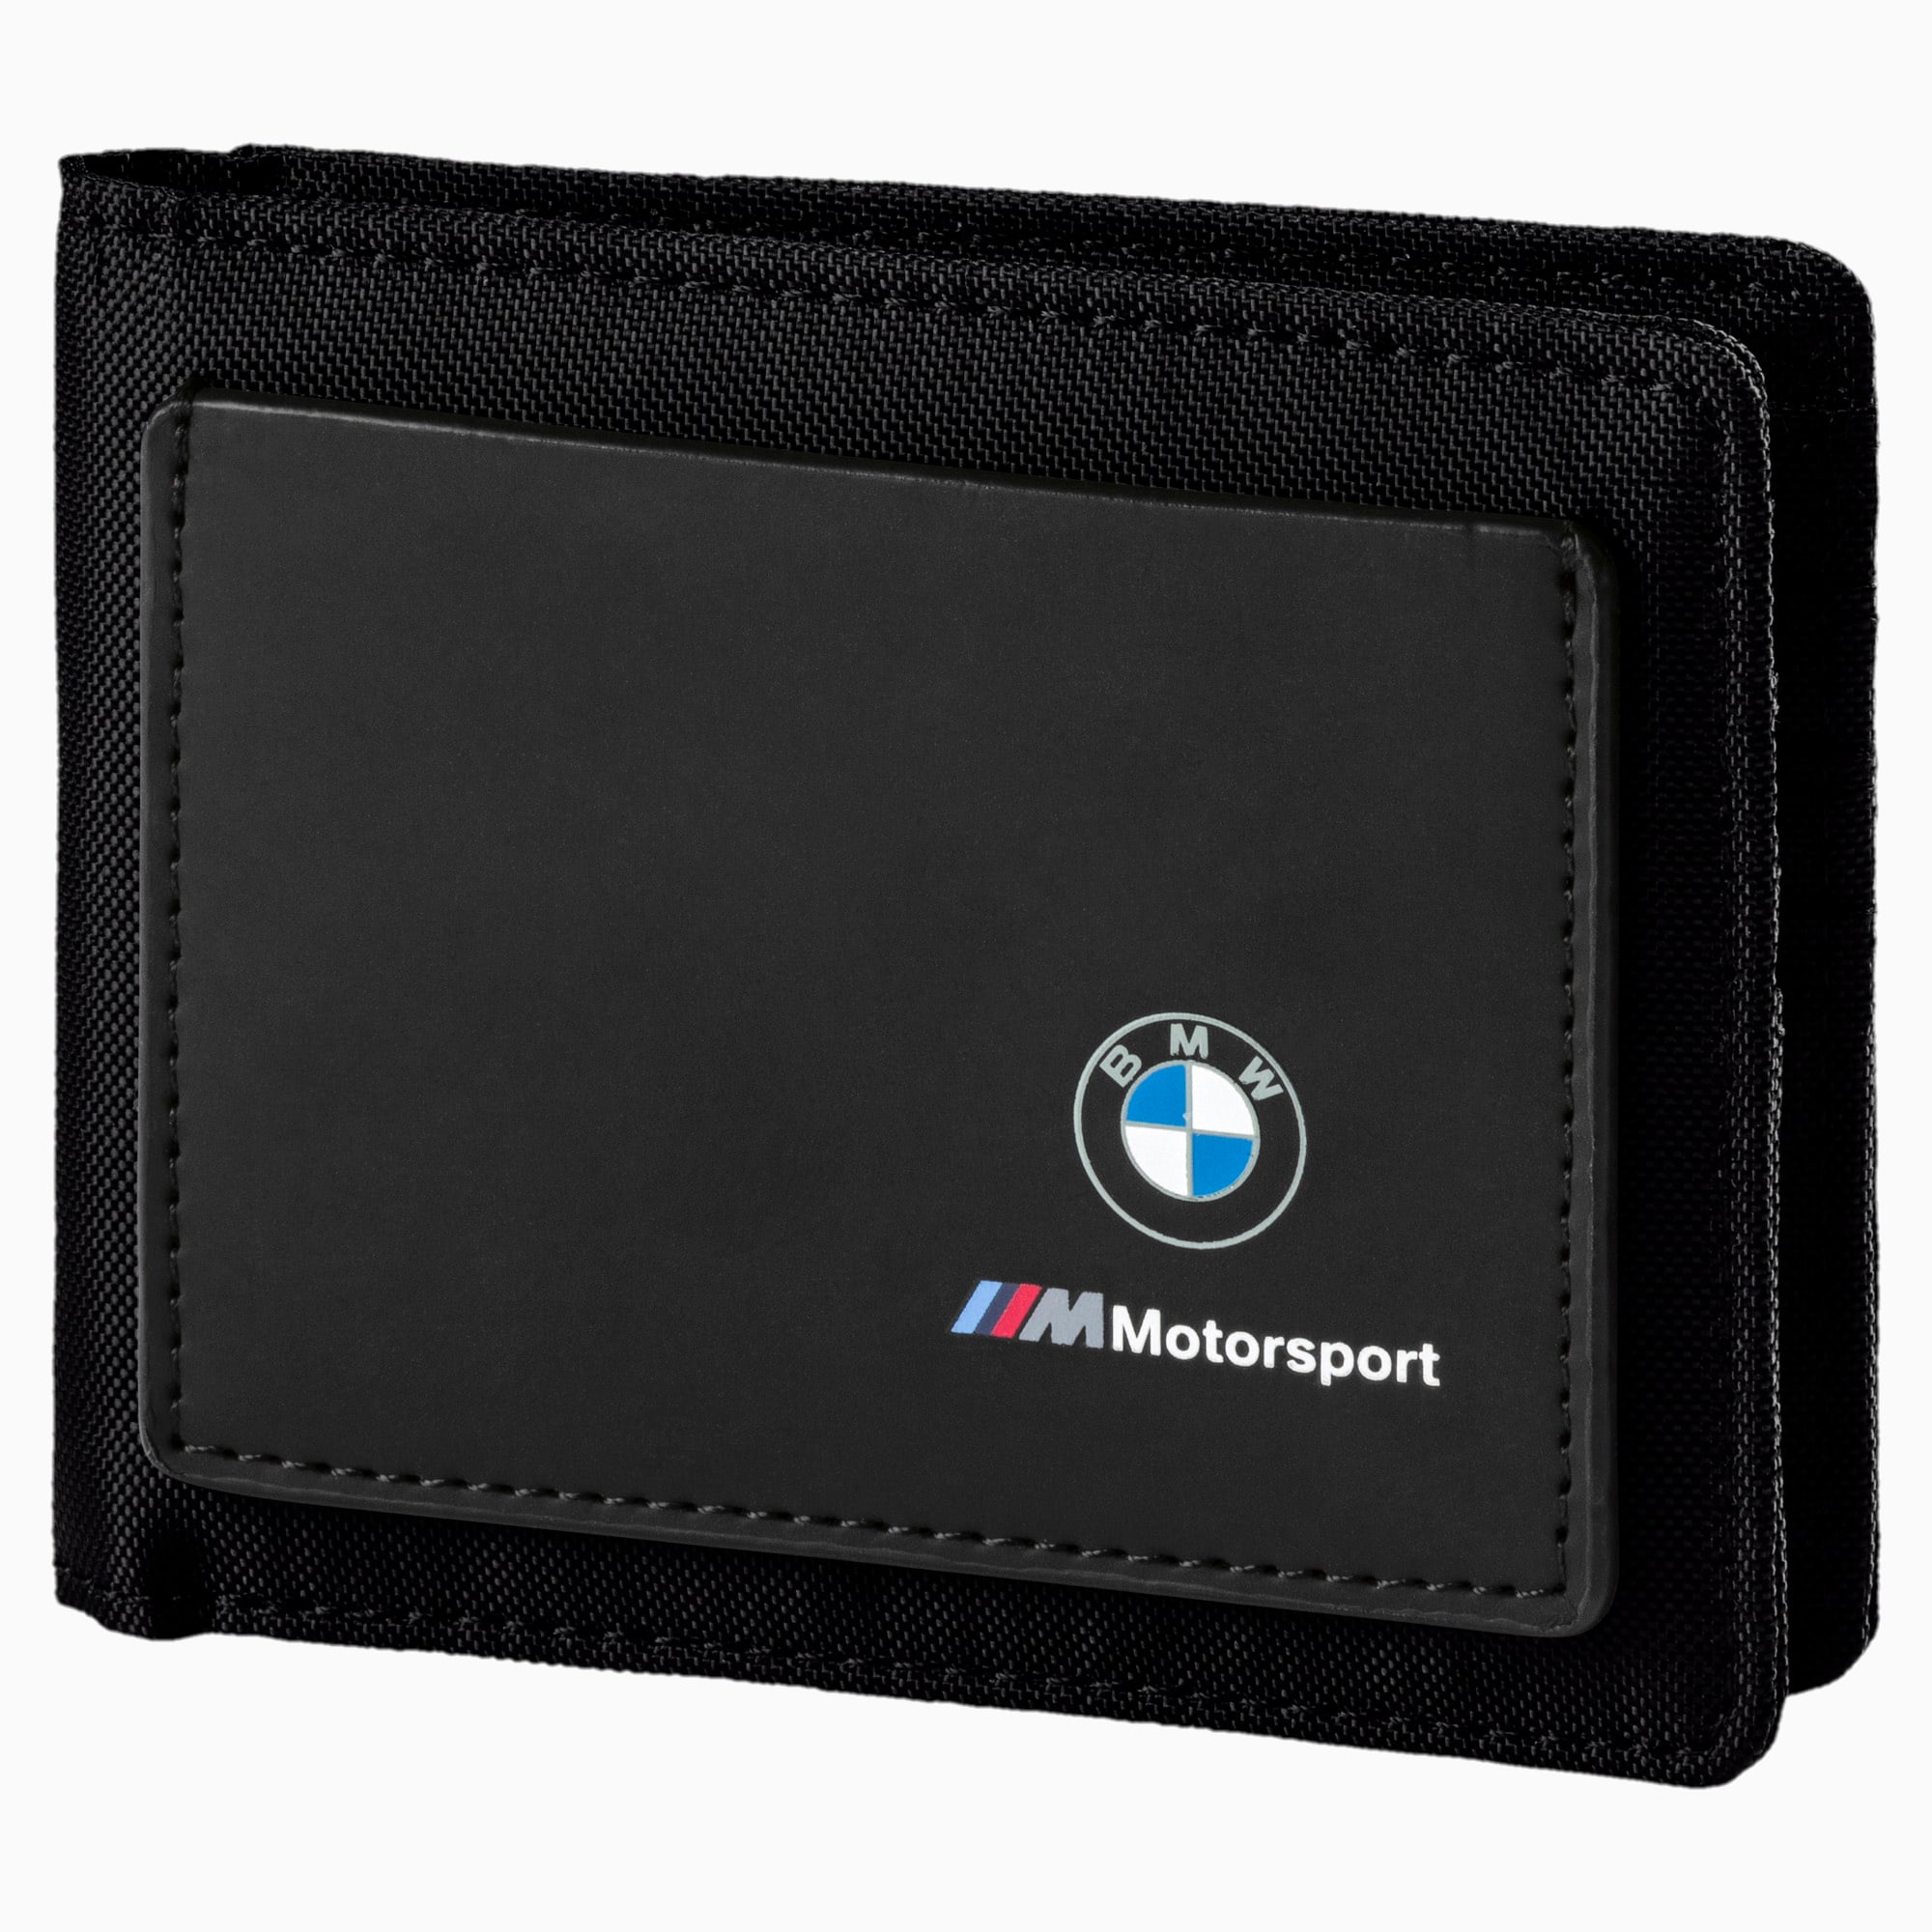 puma motorsport wallet